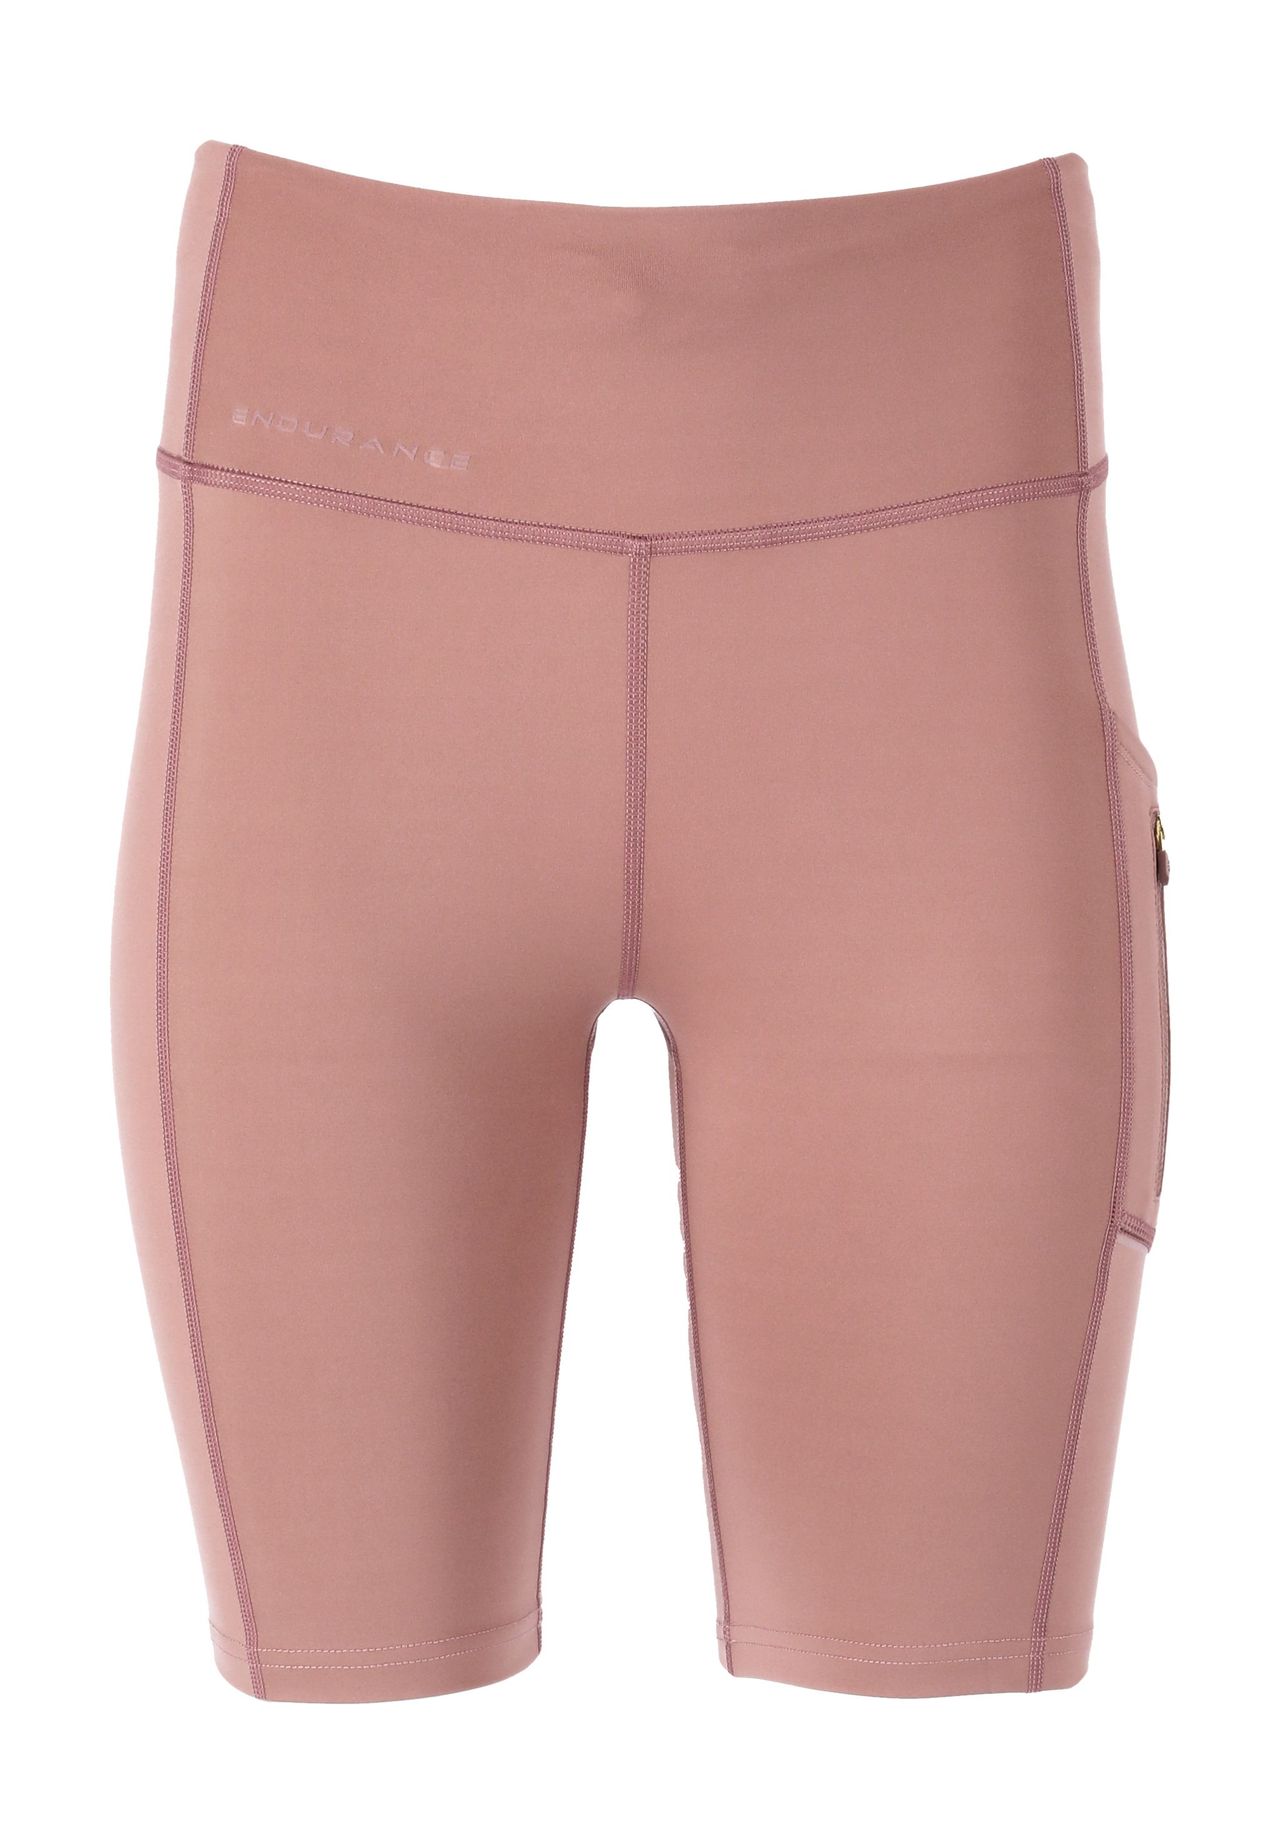 Schwarze shorts pink kaufen | GALERIA